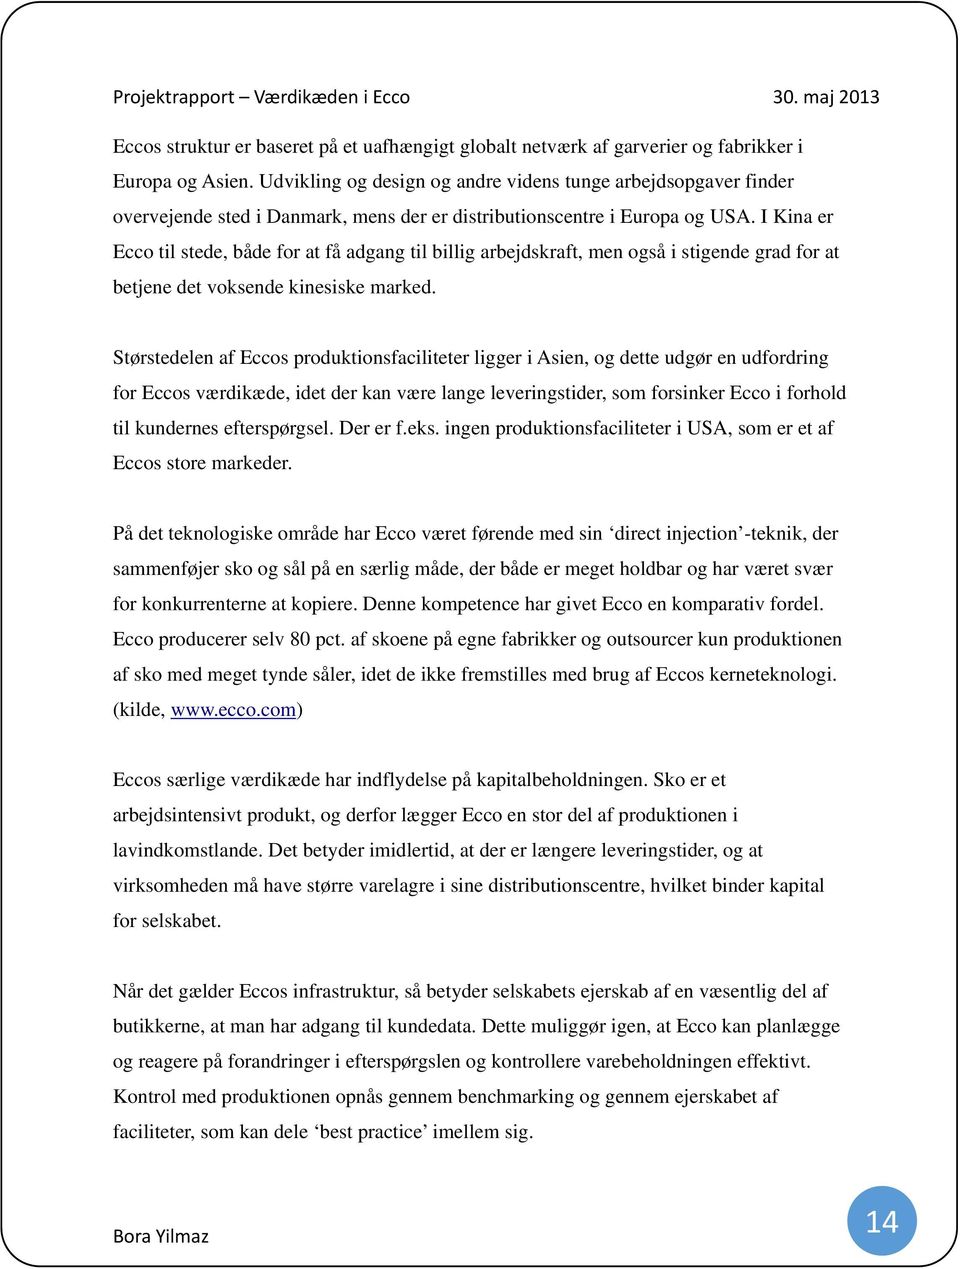 Projektrapport om Værdikæden i Ecco - PDF Gratis download